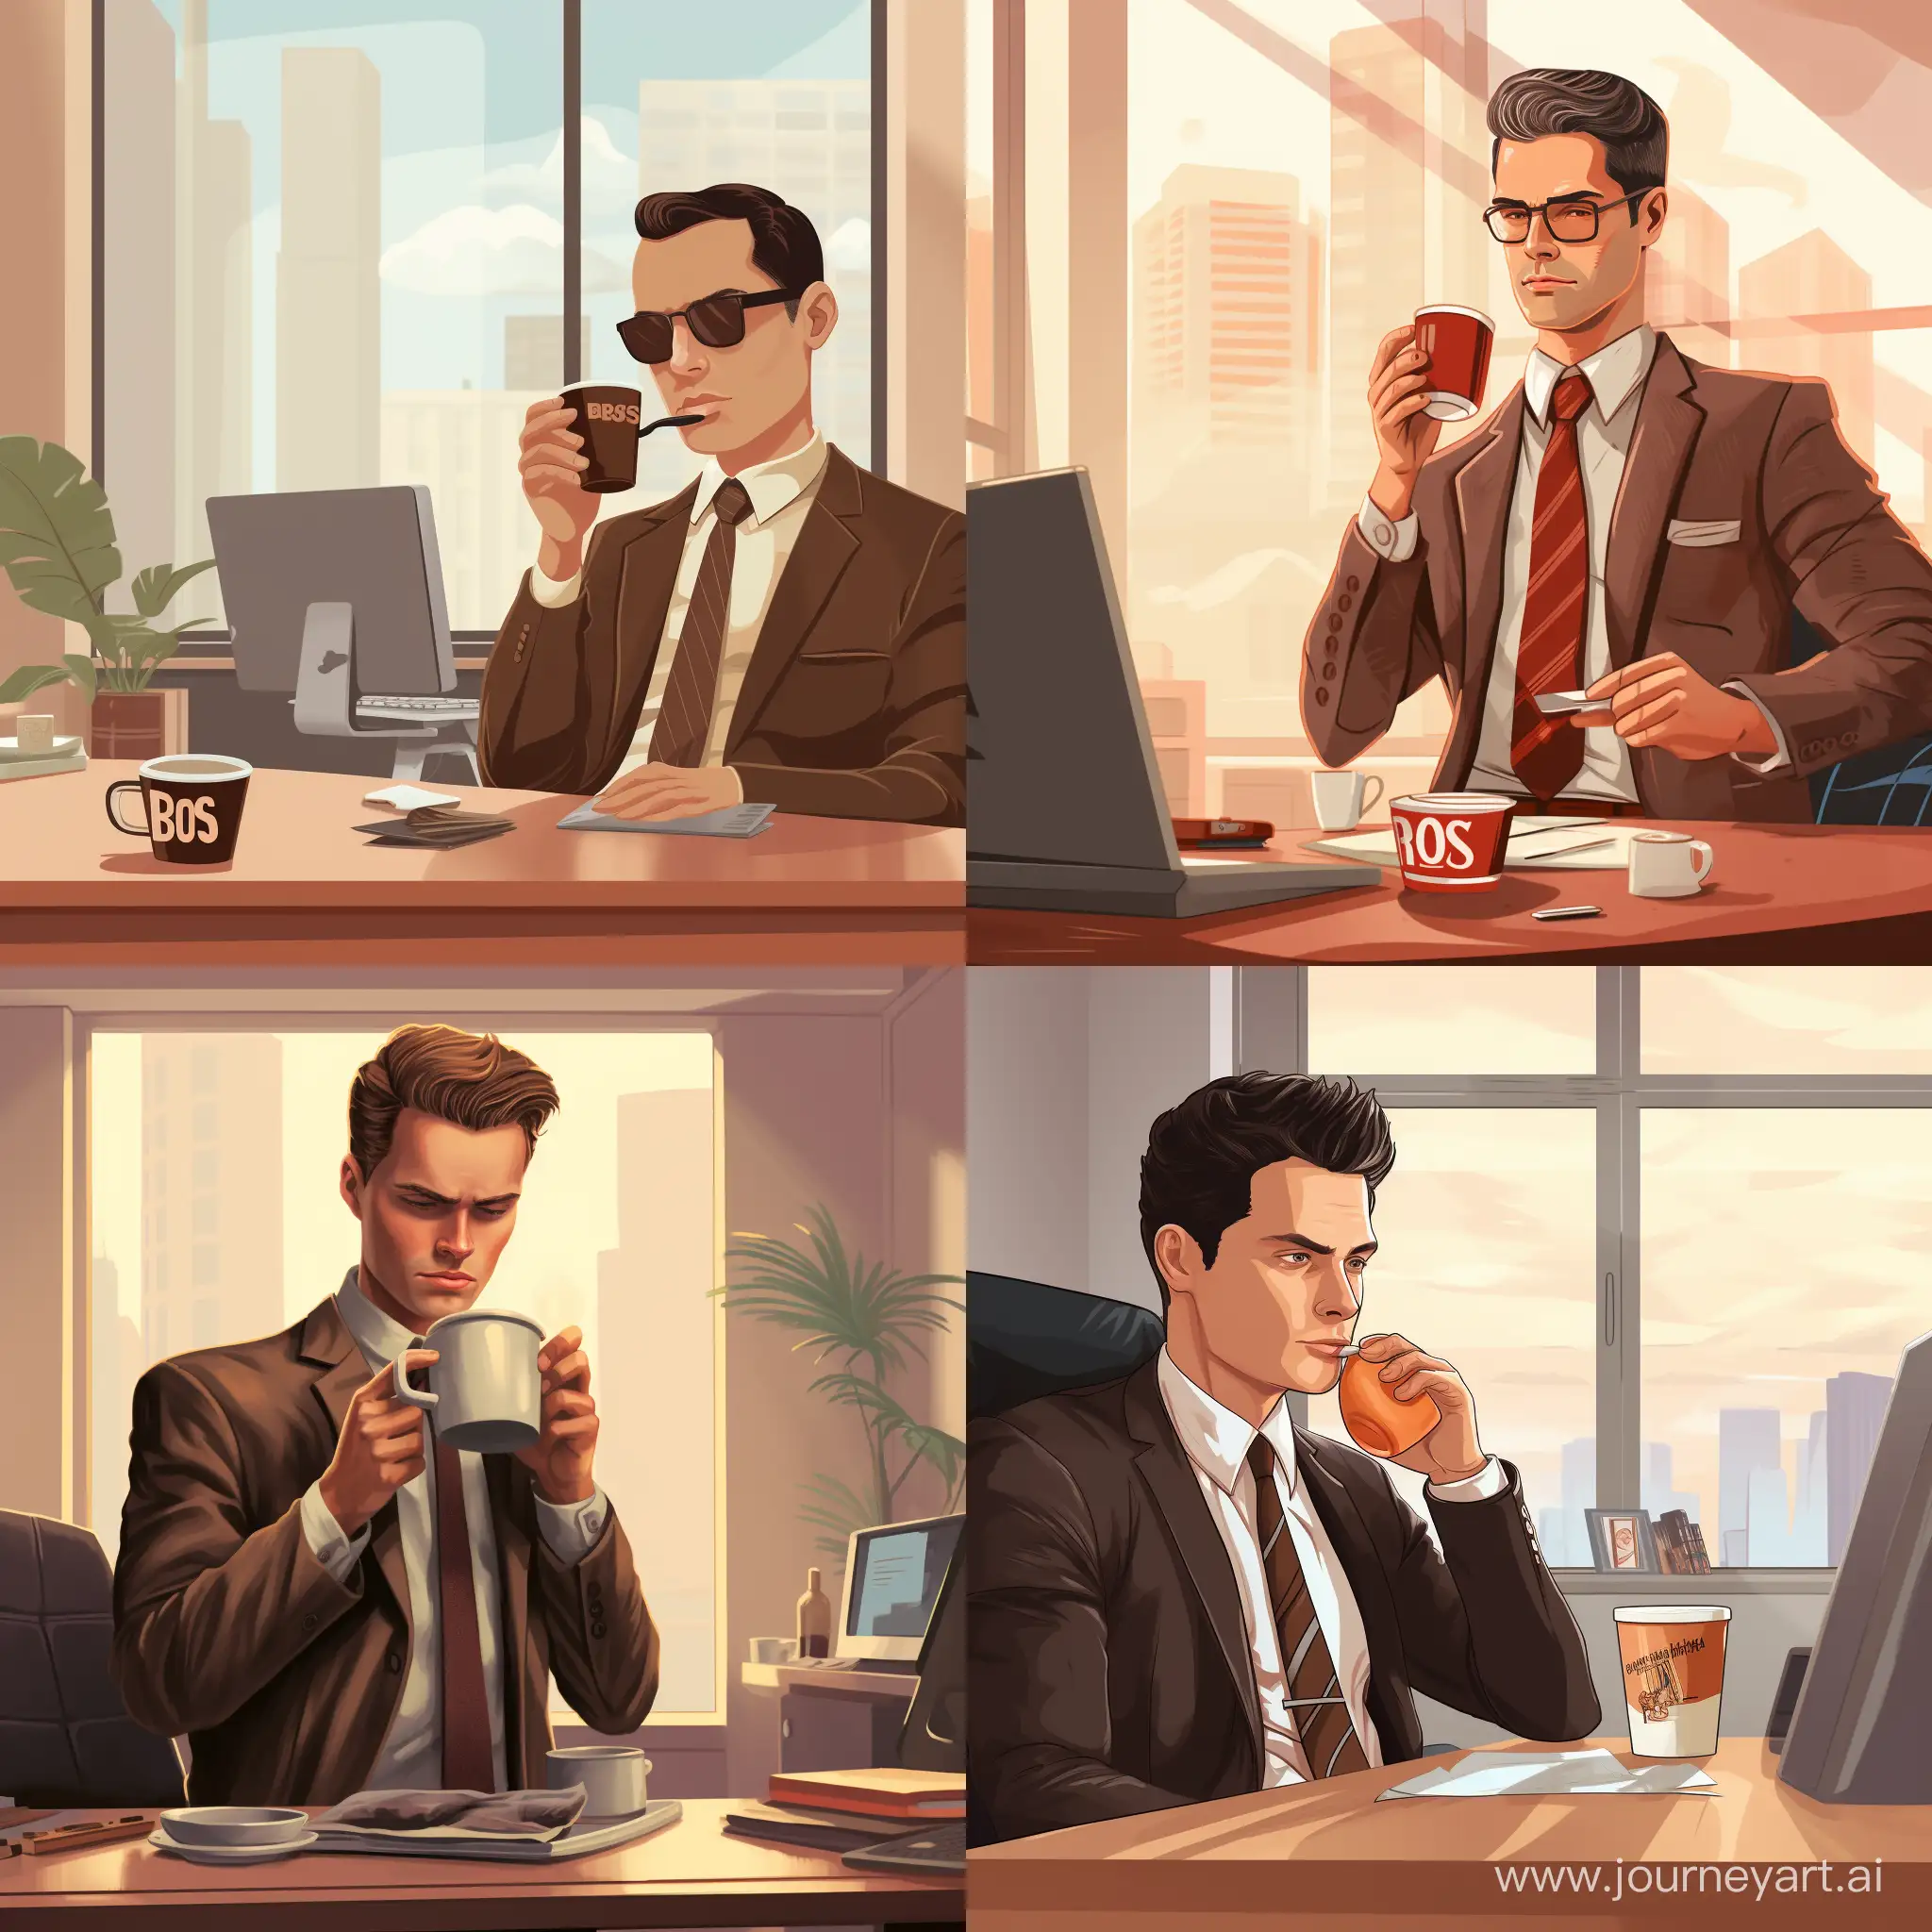 Мужчина в коричневом пиджаке с галстуком утром в офисе на работе пьет кофе из кружки на которой написано "BOSS'